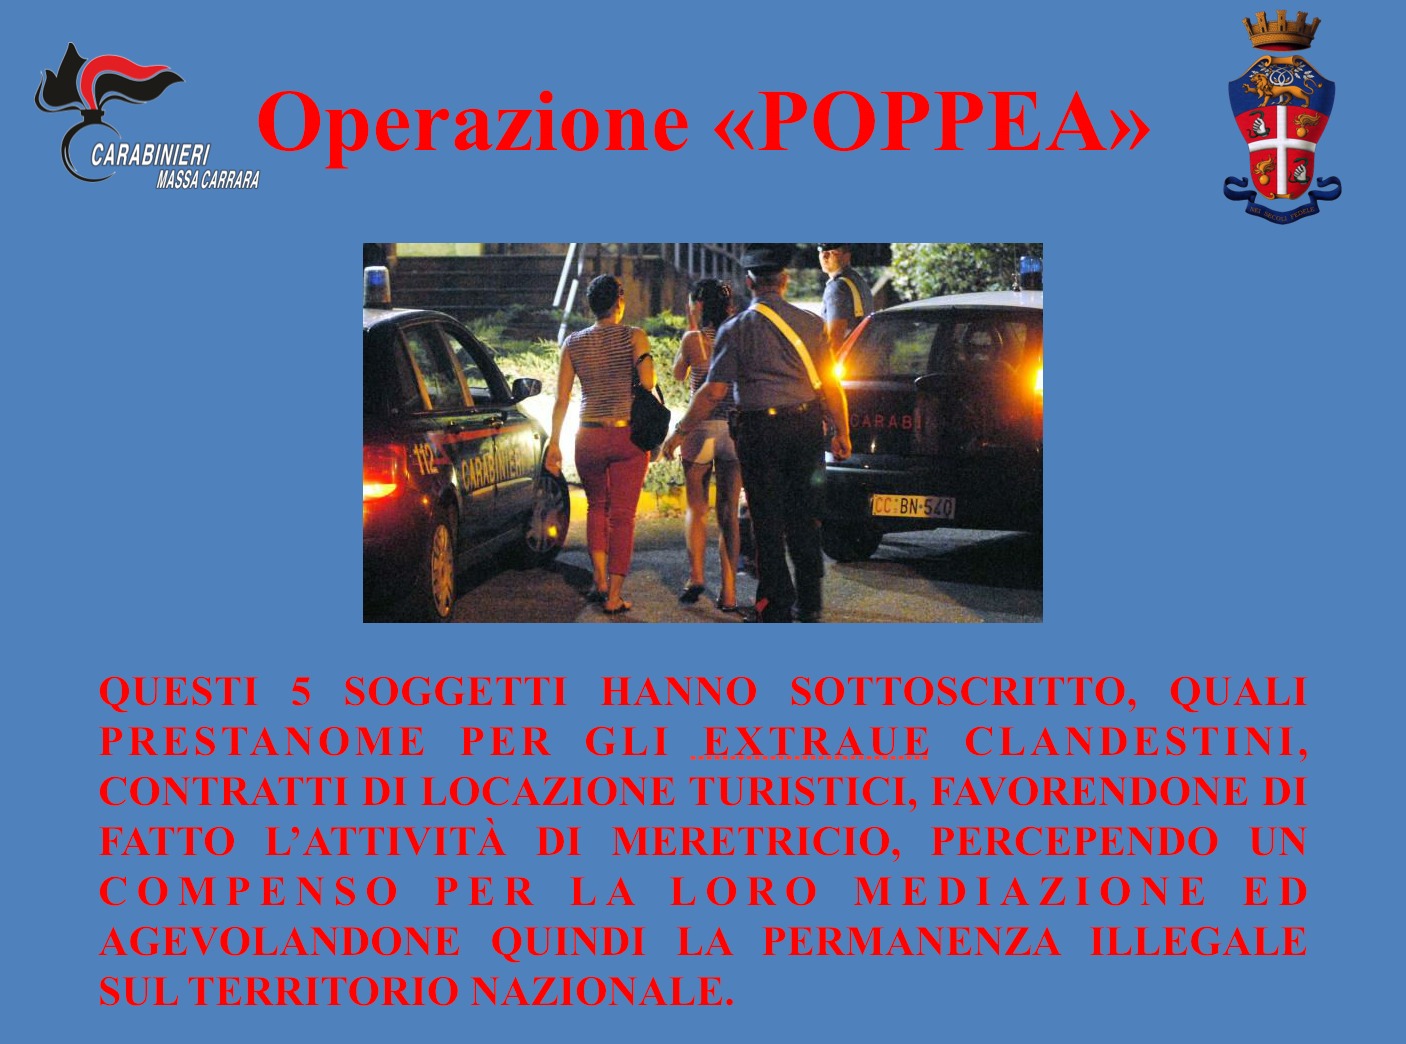 Operazione “Poppea”, nel residence sequestrato prostituzione transessuale